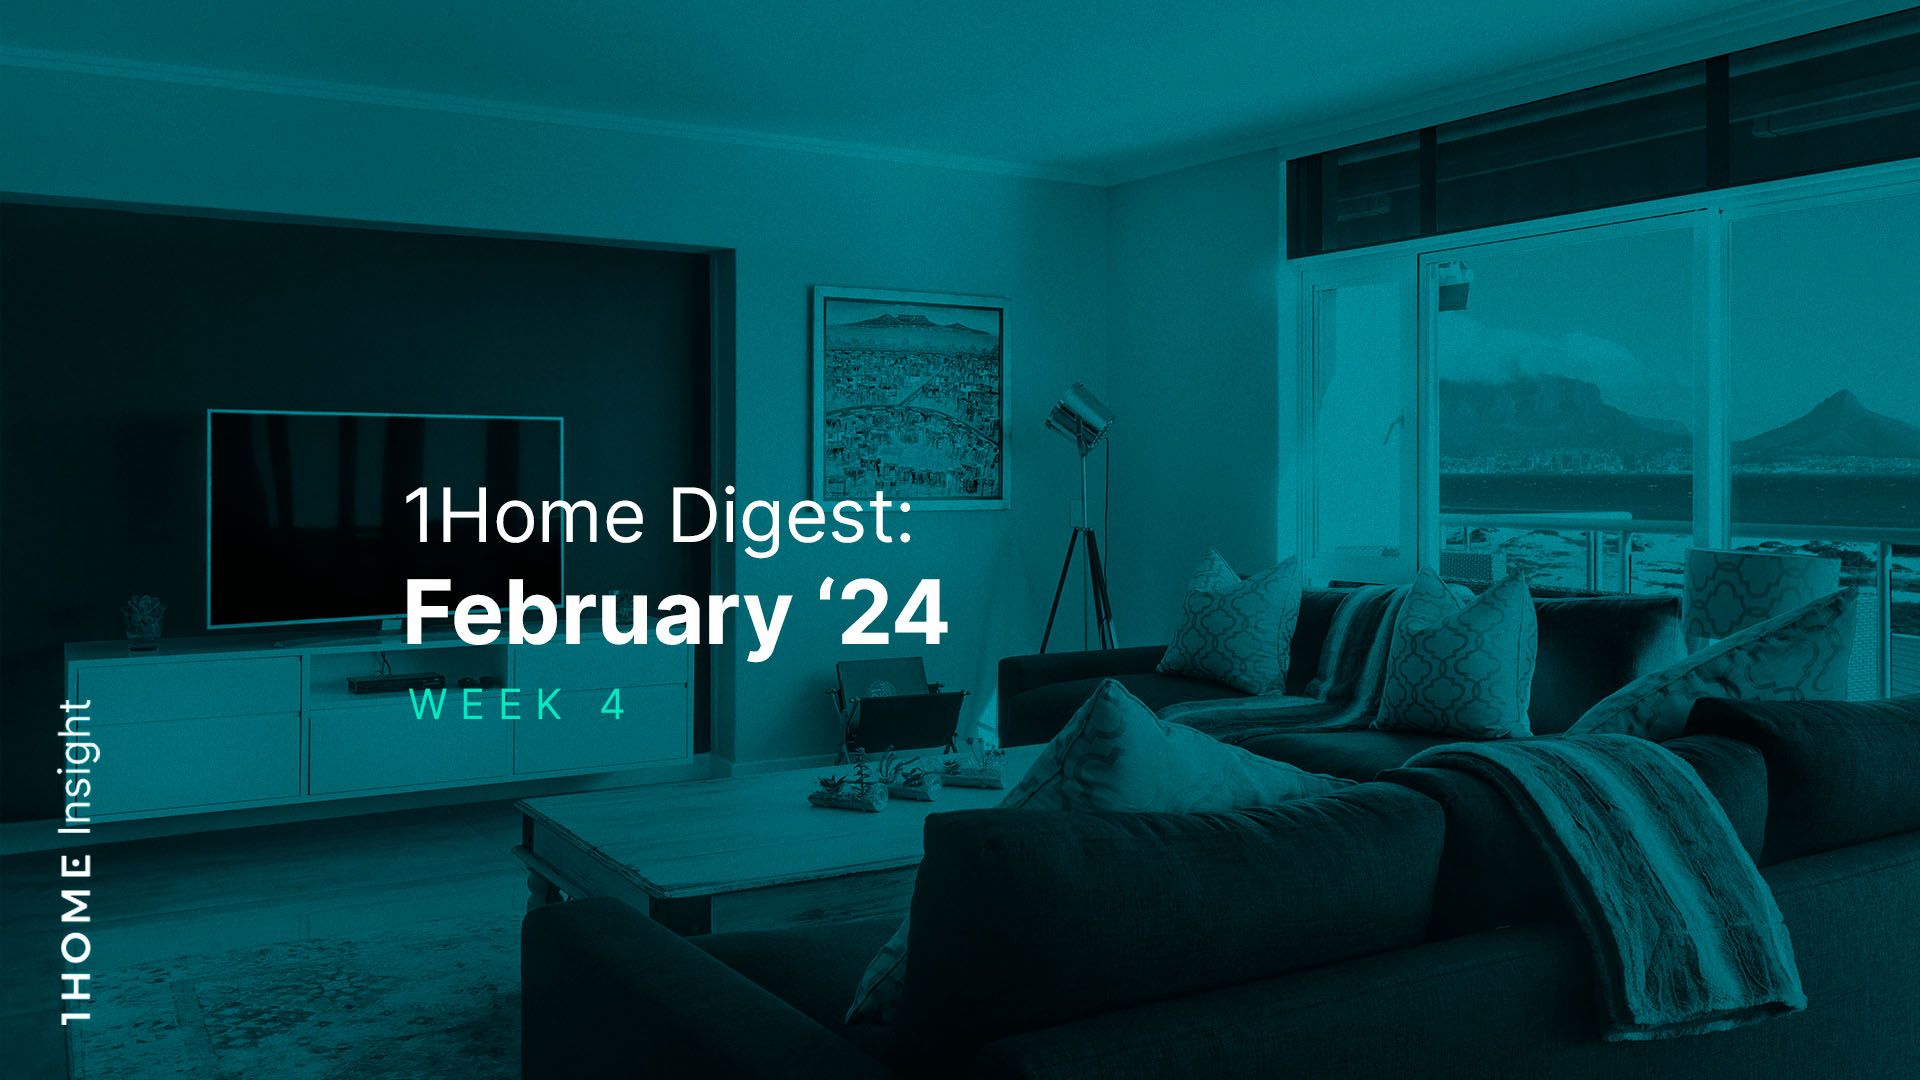 1Home Digest: February '24 - Week 4